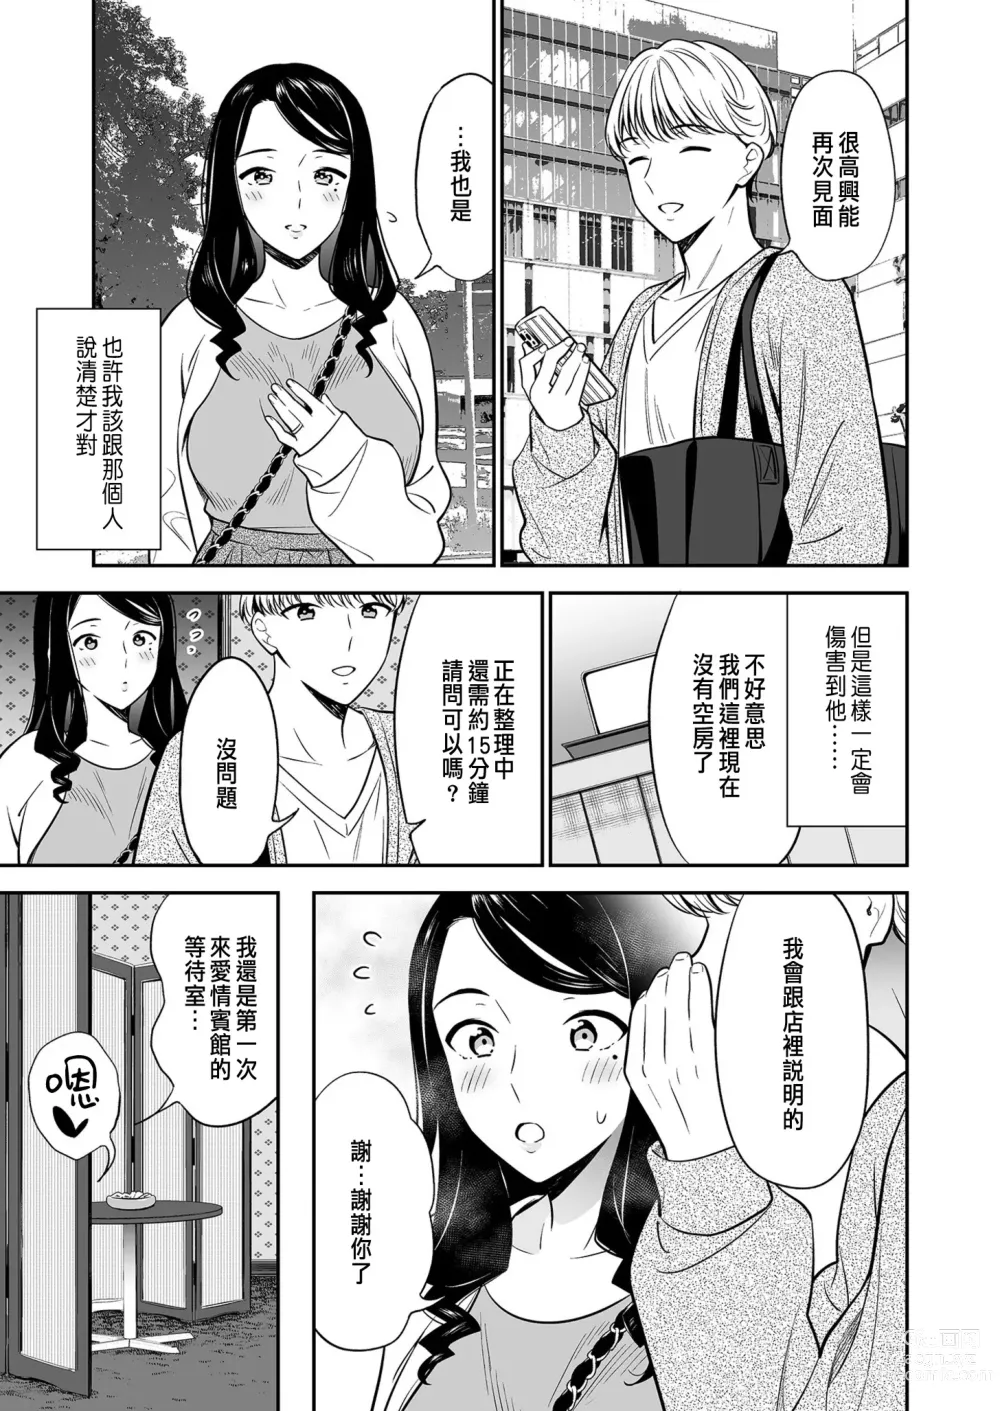 Page 11 of manga Suki nano wa Anata dake... 2